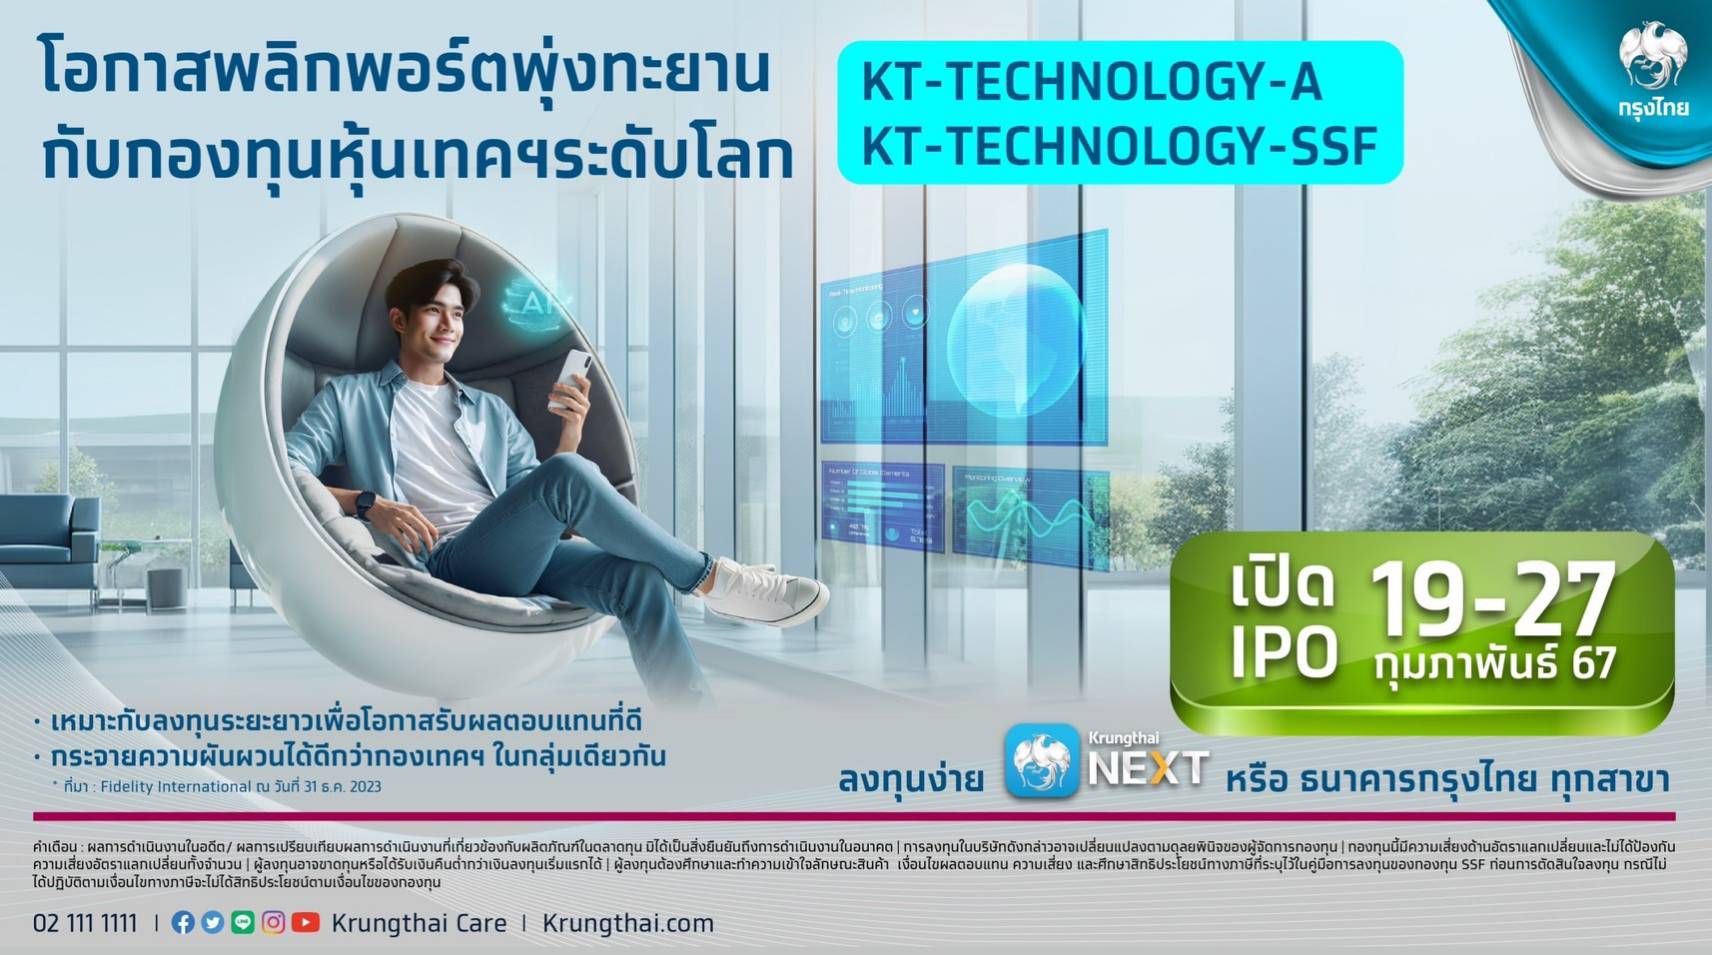 กรุงไทย เสนอขายกองทุนเปิดเคแทม World Technology พลิกโอกาสรับผลตอบแทนในหุ้นเทคโนโลยีระดับโลก เปิดไอพีโอ 19-27 ก.พ.นี้